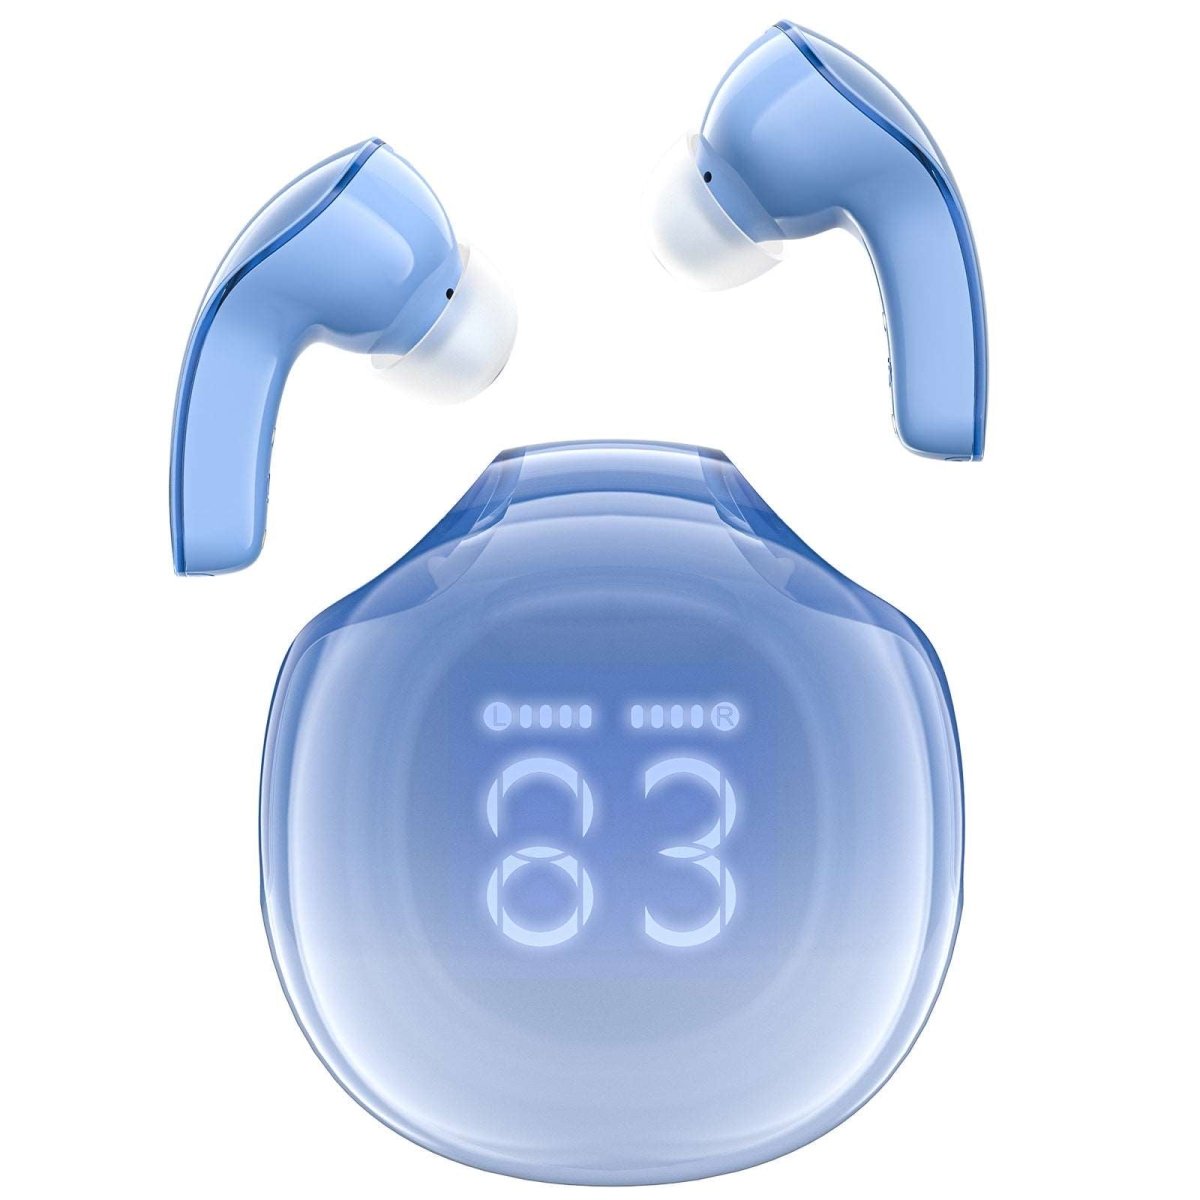 ACEFAST Auriculares inalámbricos Bluetooth 5.3, pantalla de alimentación  LED, mini auriculares intrauditivos de cristal con estuche de carga